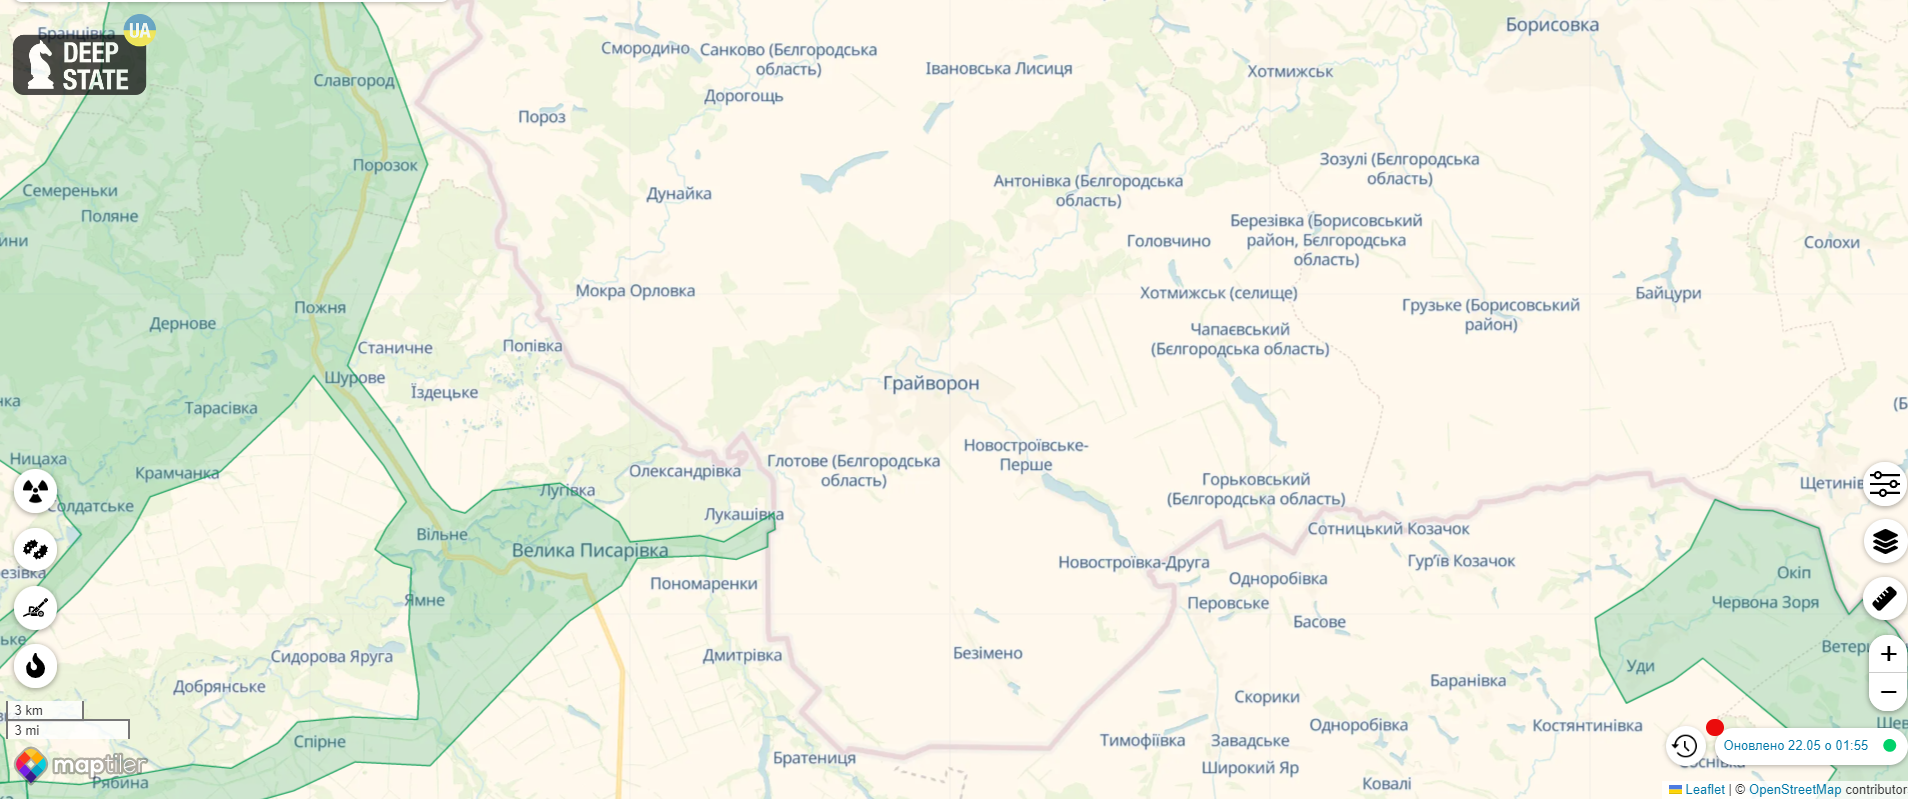 Из Белгородской области срочно эвакуируют часть ядерных запасов РФ – ГУР